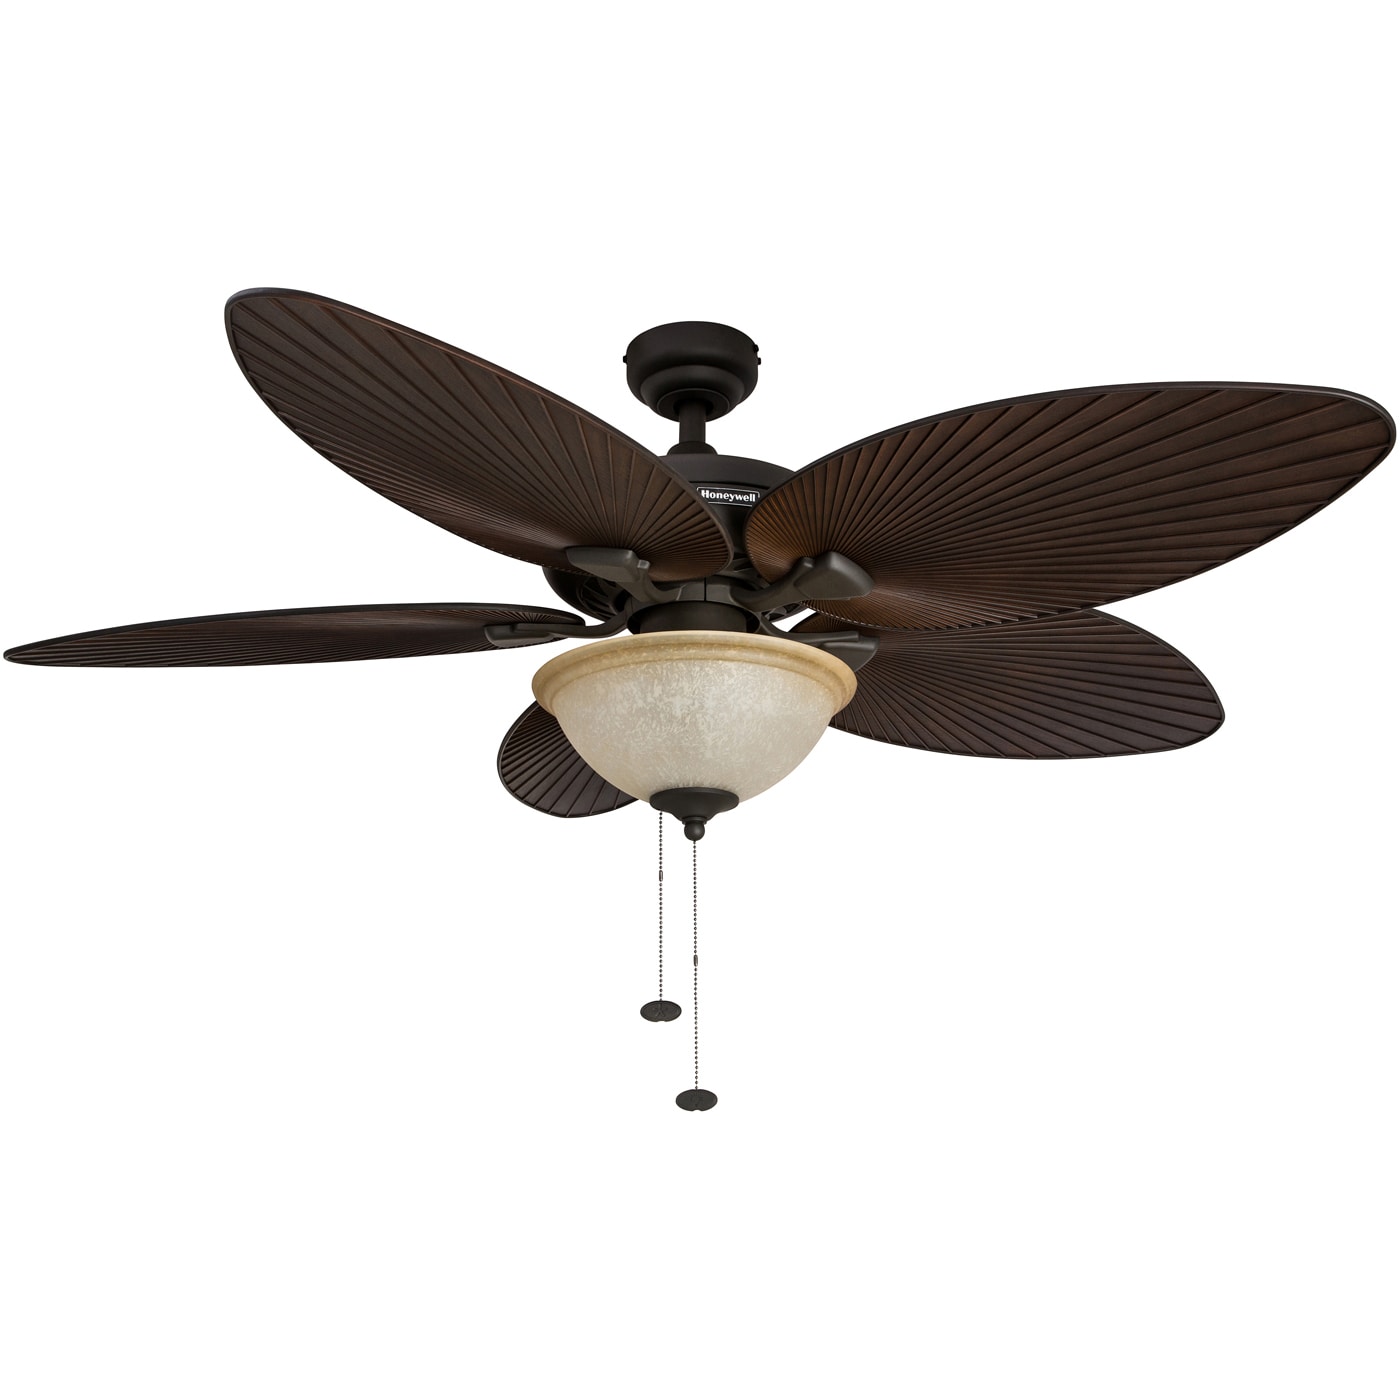 Honeywell Palm Island 52-in Bronze Indoor/Outdoor Ceiling Fan with